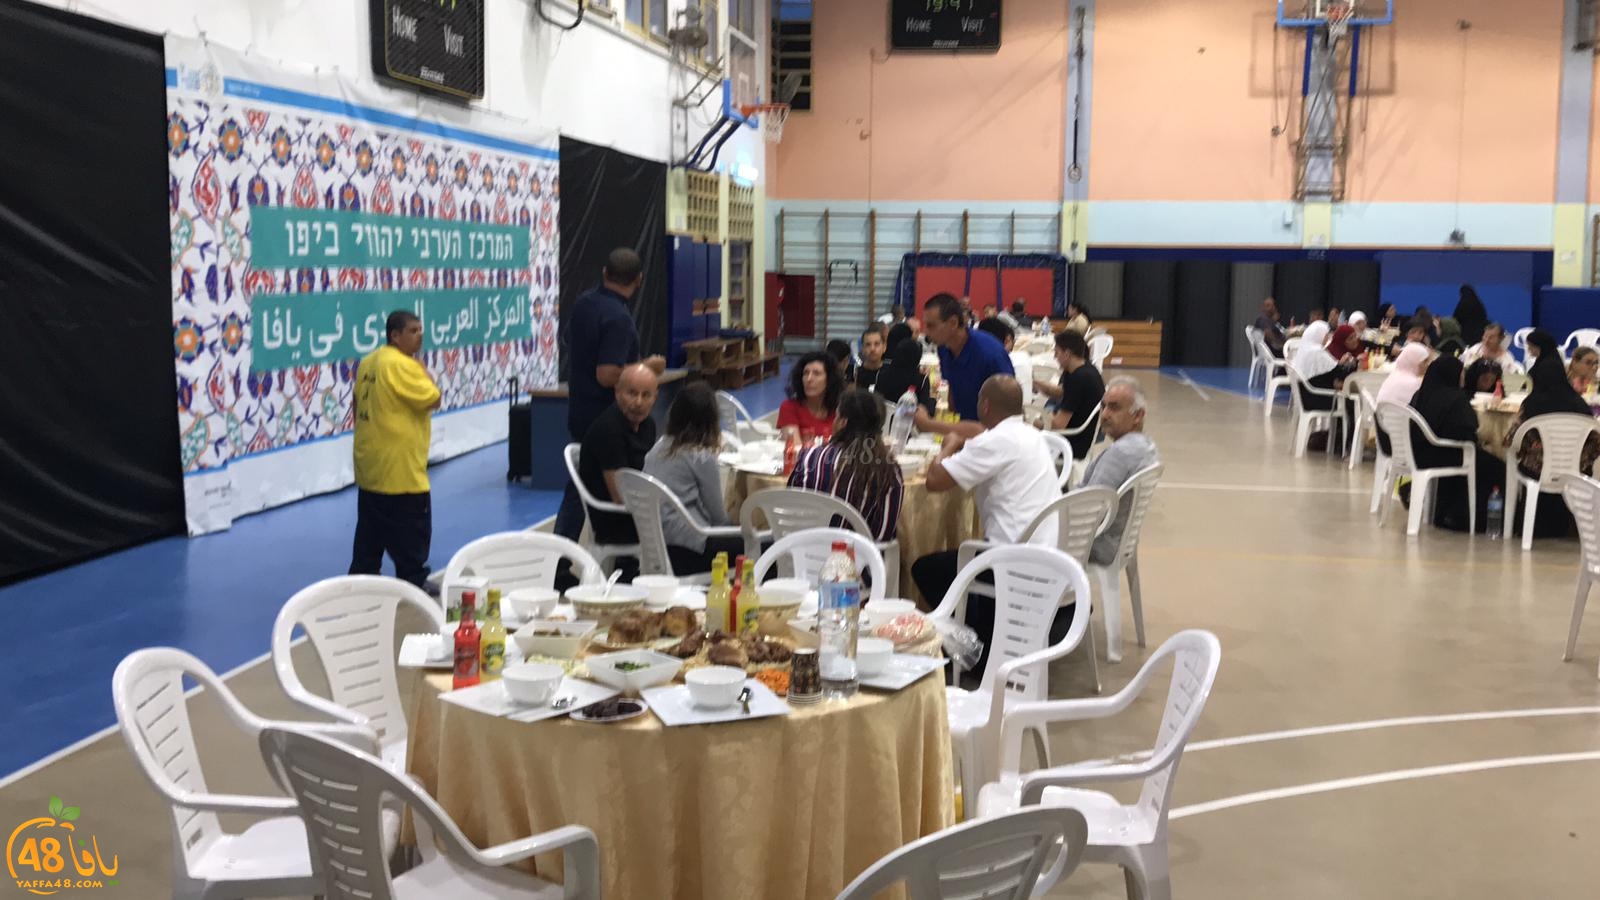  فيديو: افطار جماعي لأهالي يافا في المركز الجماهيري بالتعاون مع لجنة حي العجمي والجبلية 